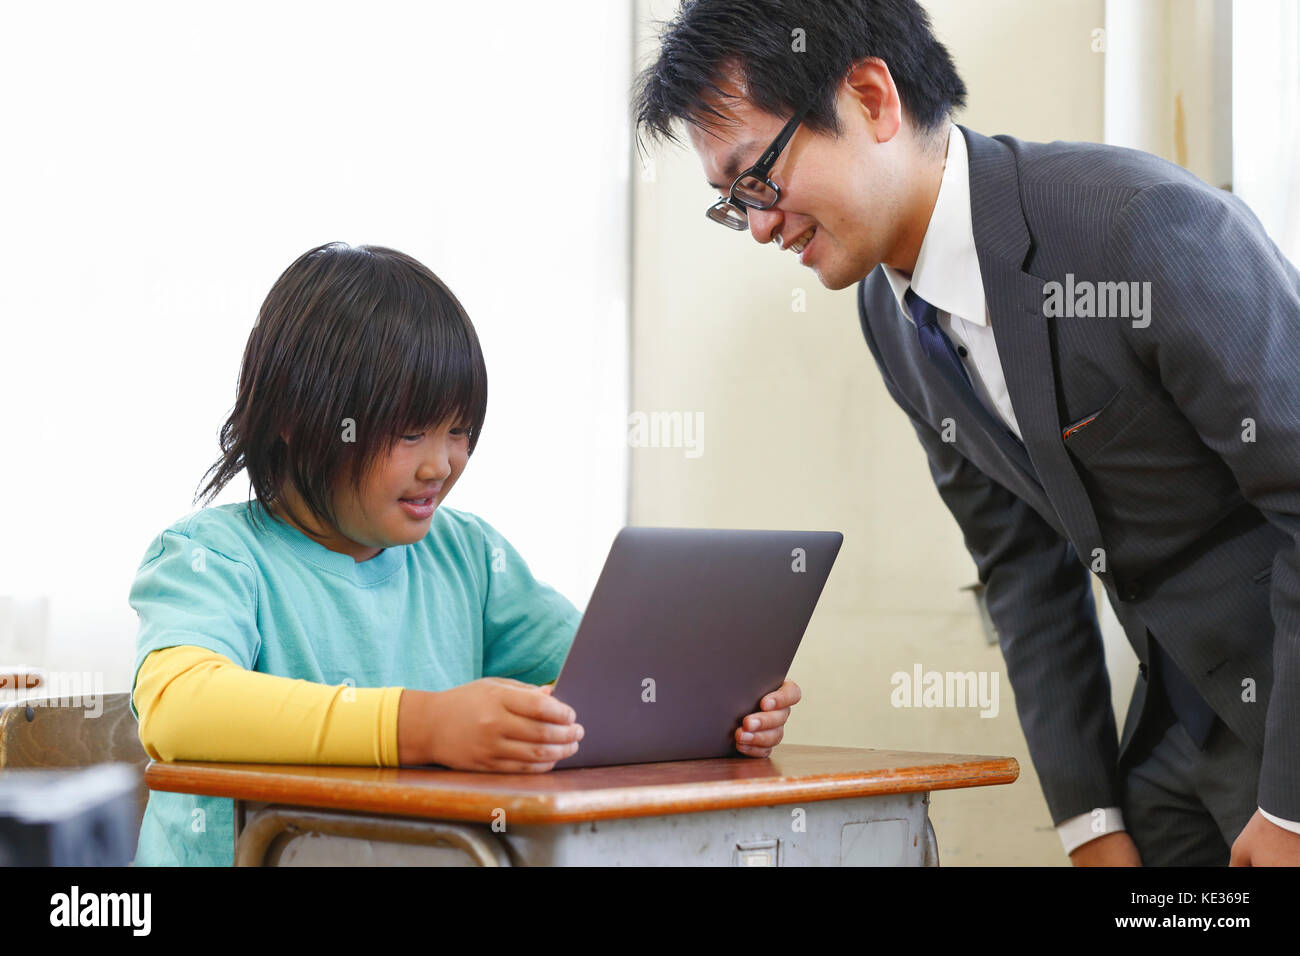 Giapponese, insegnante di scuola elementare di insegnamento in aula Foto Stock